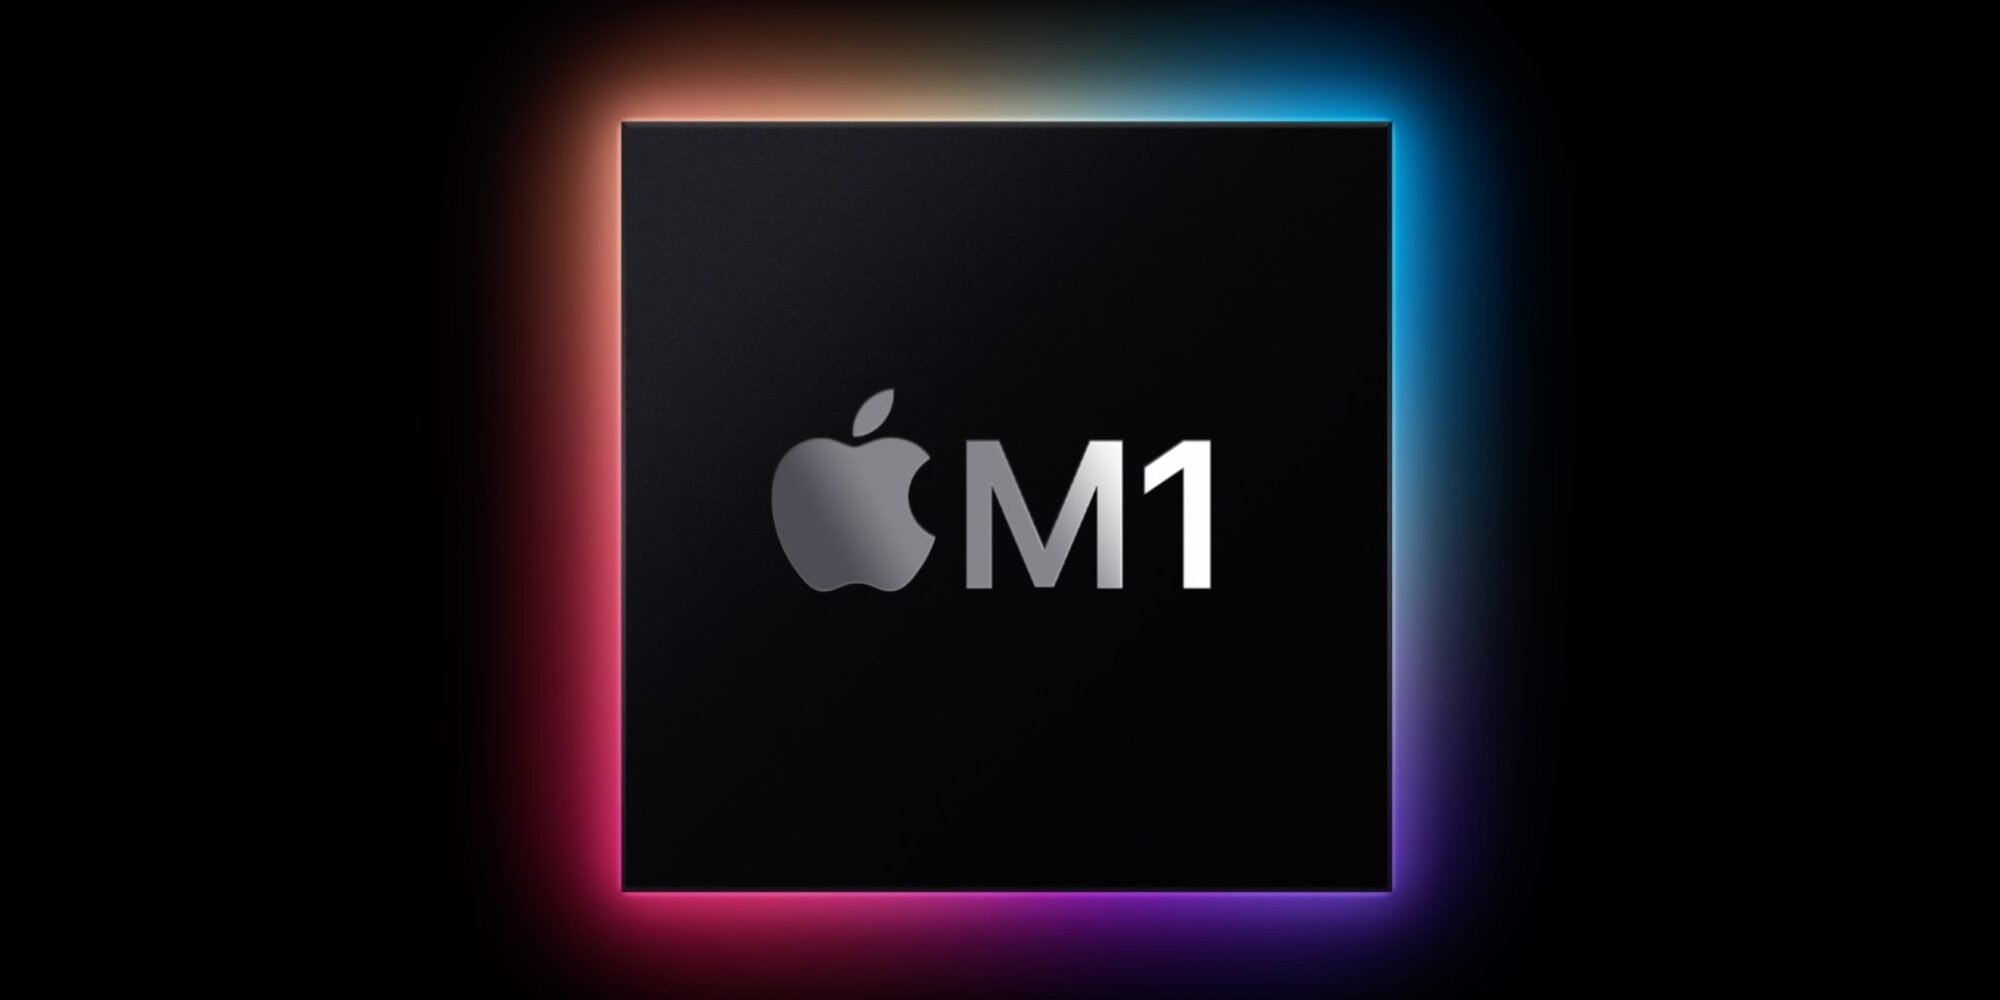 Αποκαλύφθηκε το M1 SoC της Apple, με «την καλύτερη σχέση απόδοσης-κατανάλωσης»